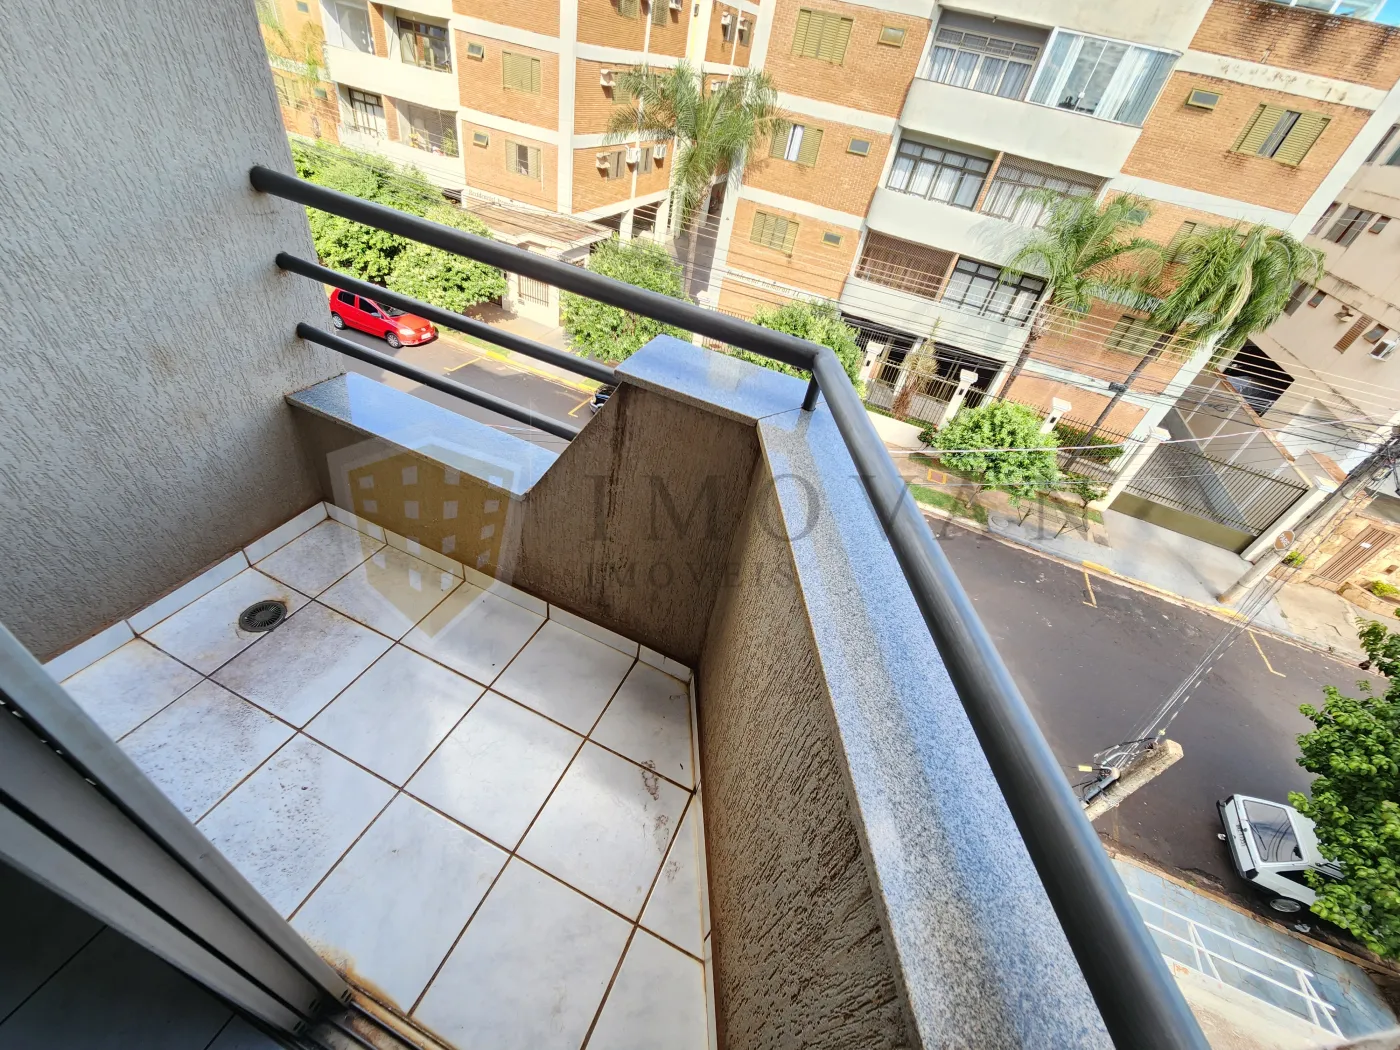 Alugar Apartamento / Padrão em Ribeirão Preto R$ 900,00 - Foto 14